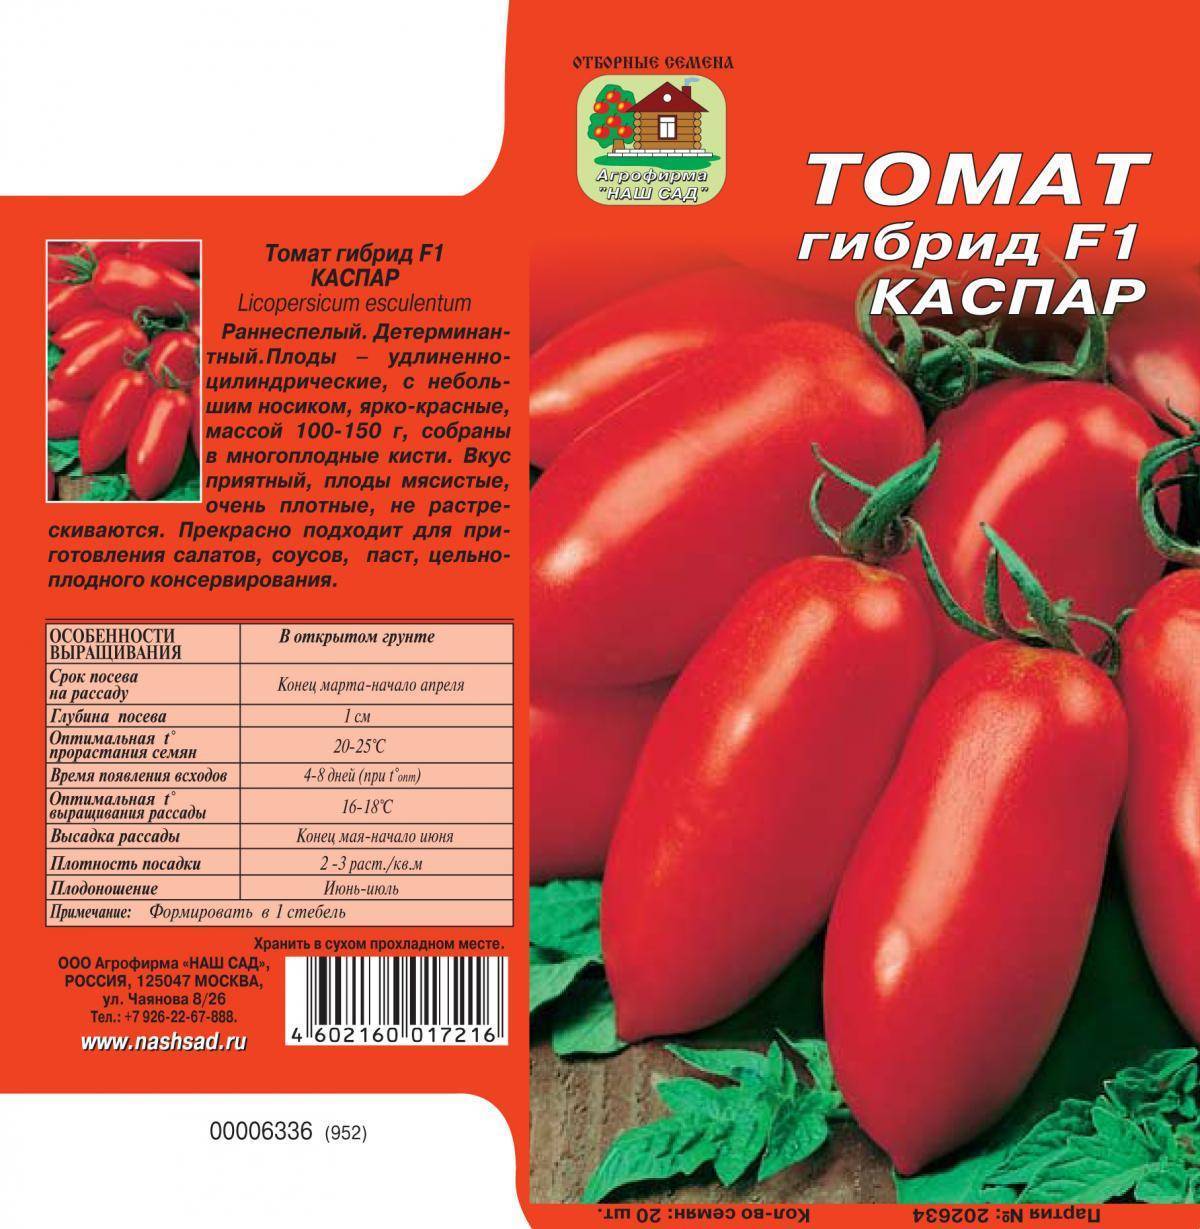 Томат кострома: характеристика и описание сорта, отзывы опытных дачников и фото кустов и полученного урожая